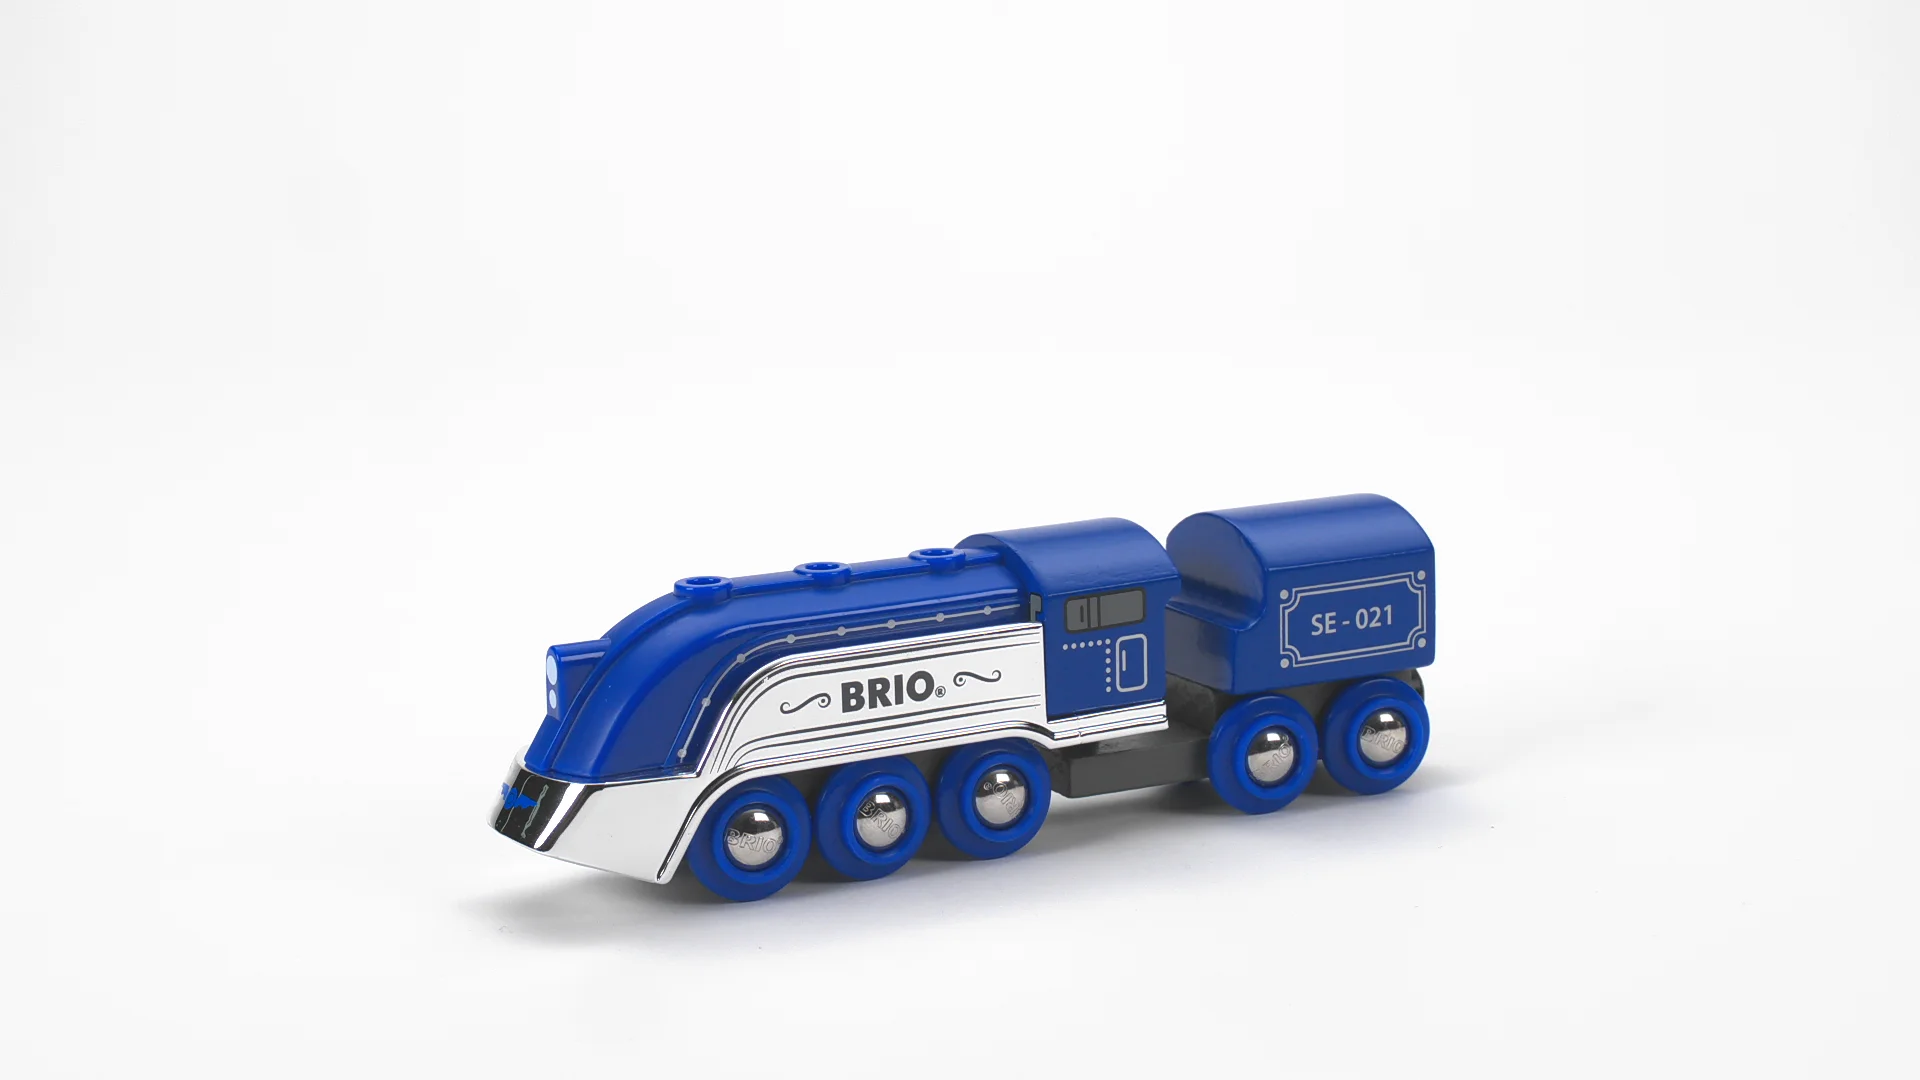 BRIO World - 33642 Special Edition Train 2021 on Vimeo